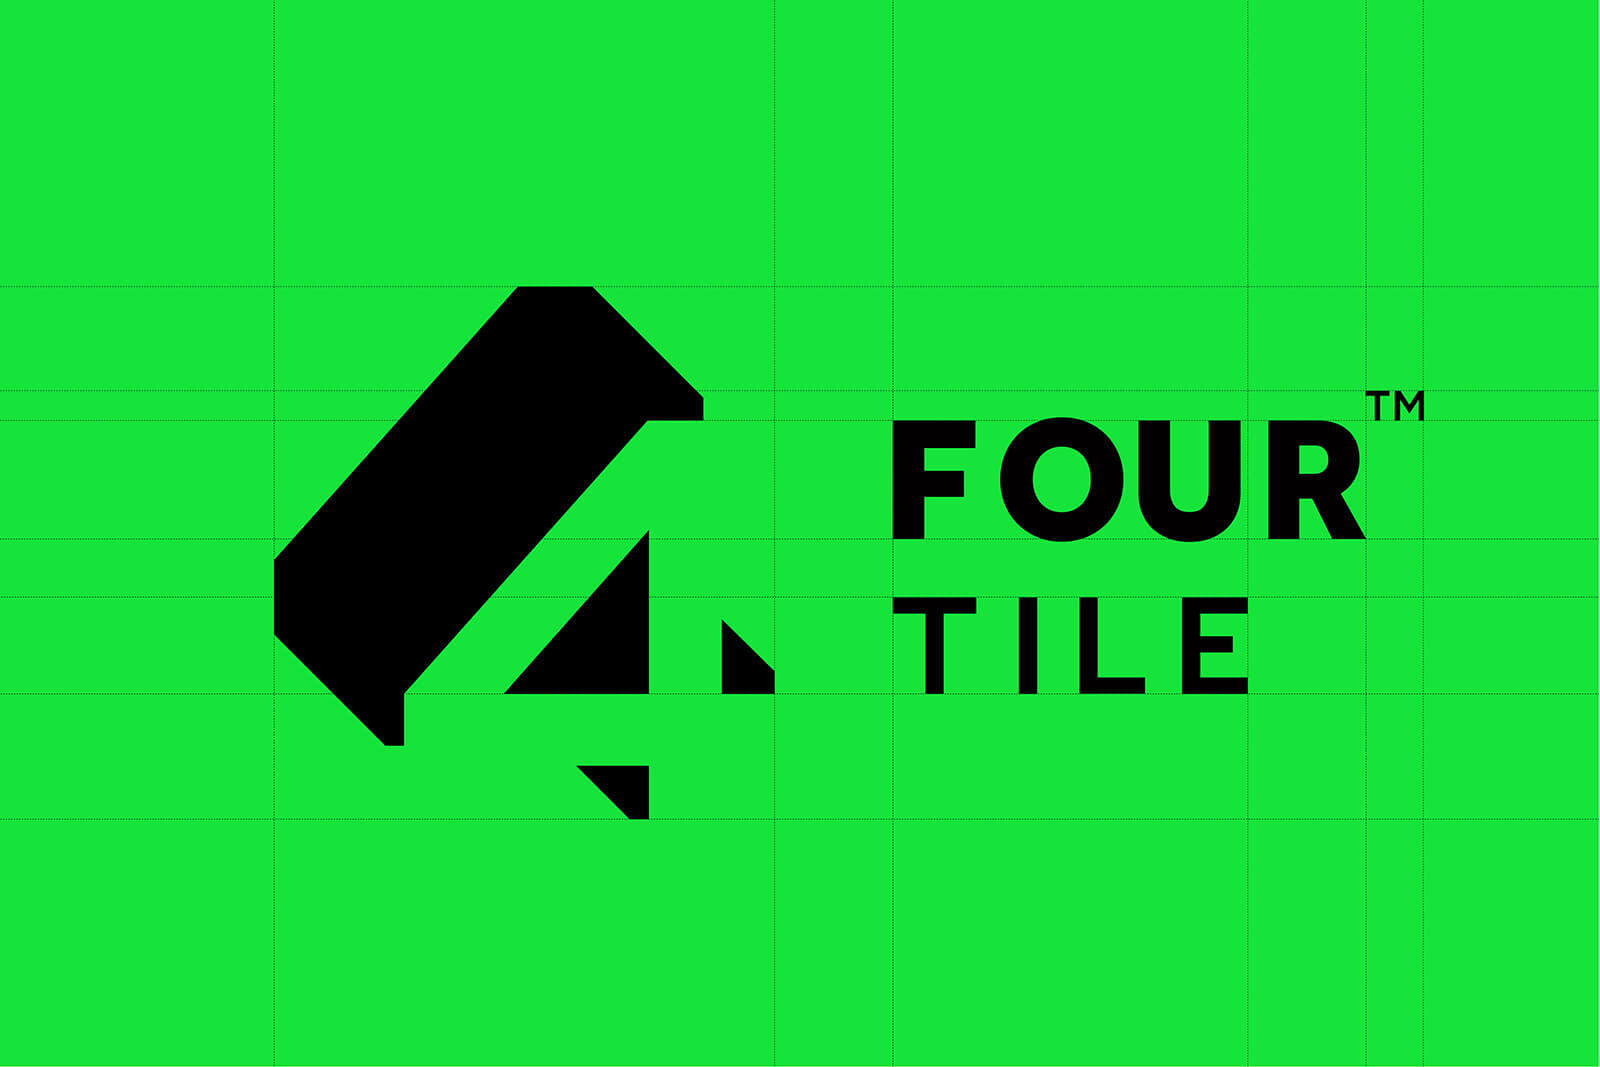 4 tile brand logo